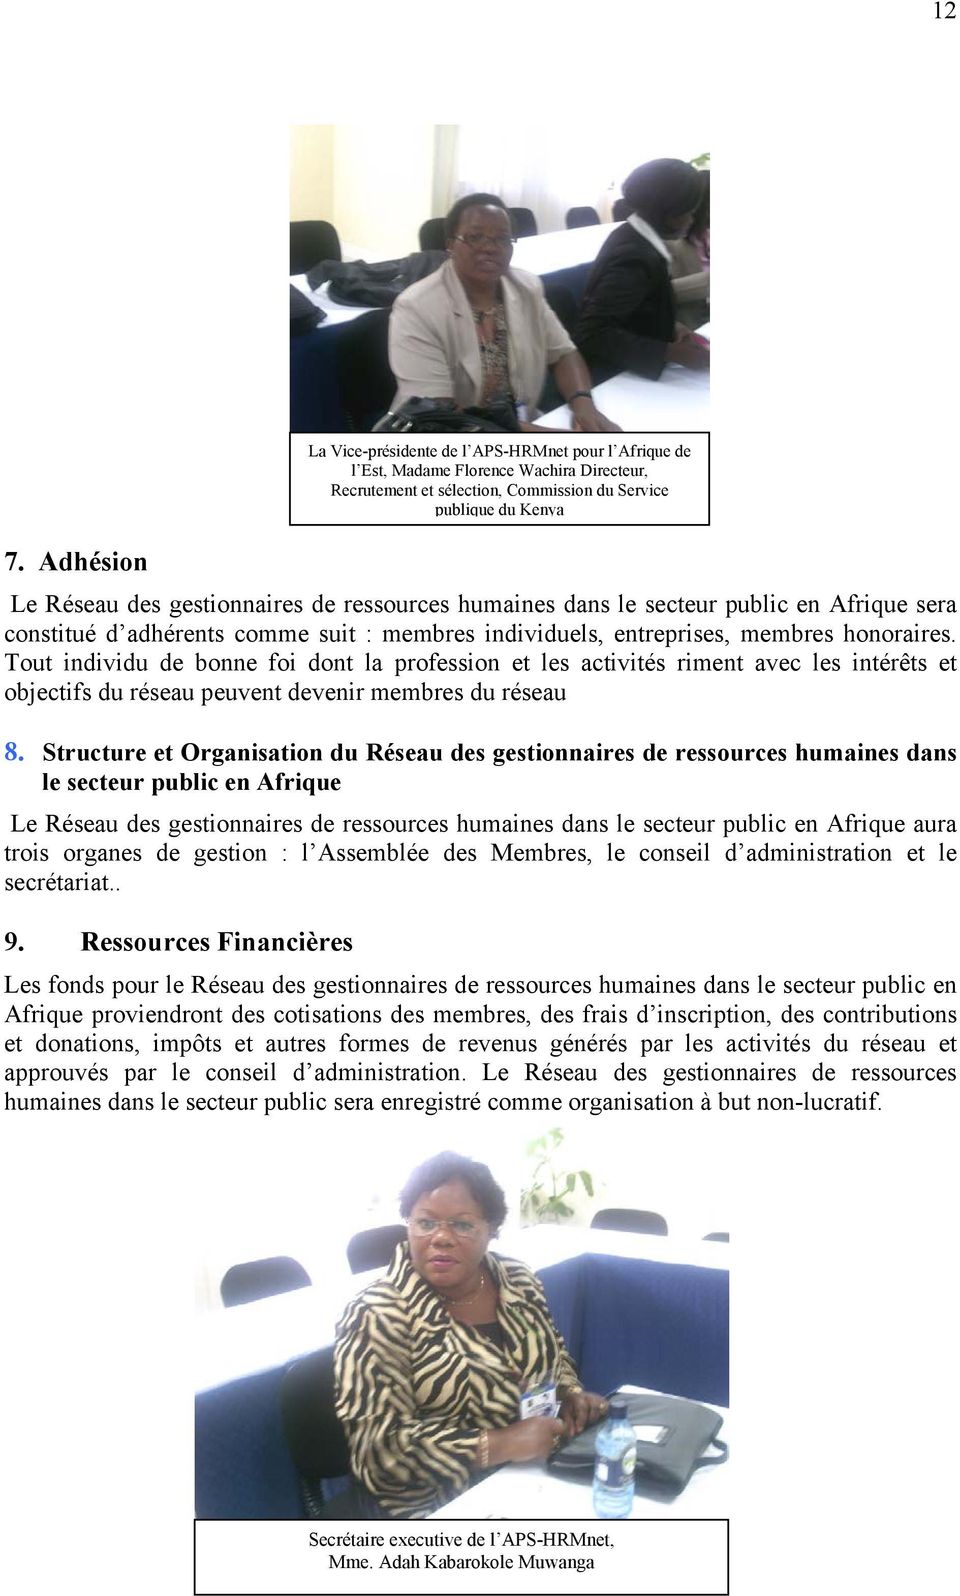 Structure et Organisation du Réseau des gestionnaires de ressources humaines dans le secteur public en Afrique Le Réseau des gestionnaires de ressources humaines dans le secteur public en Afrique